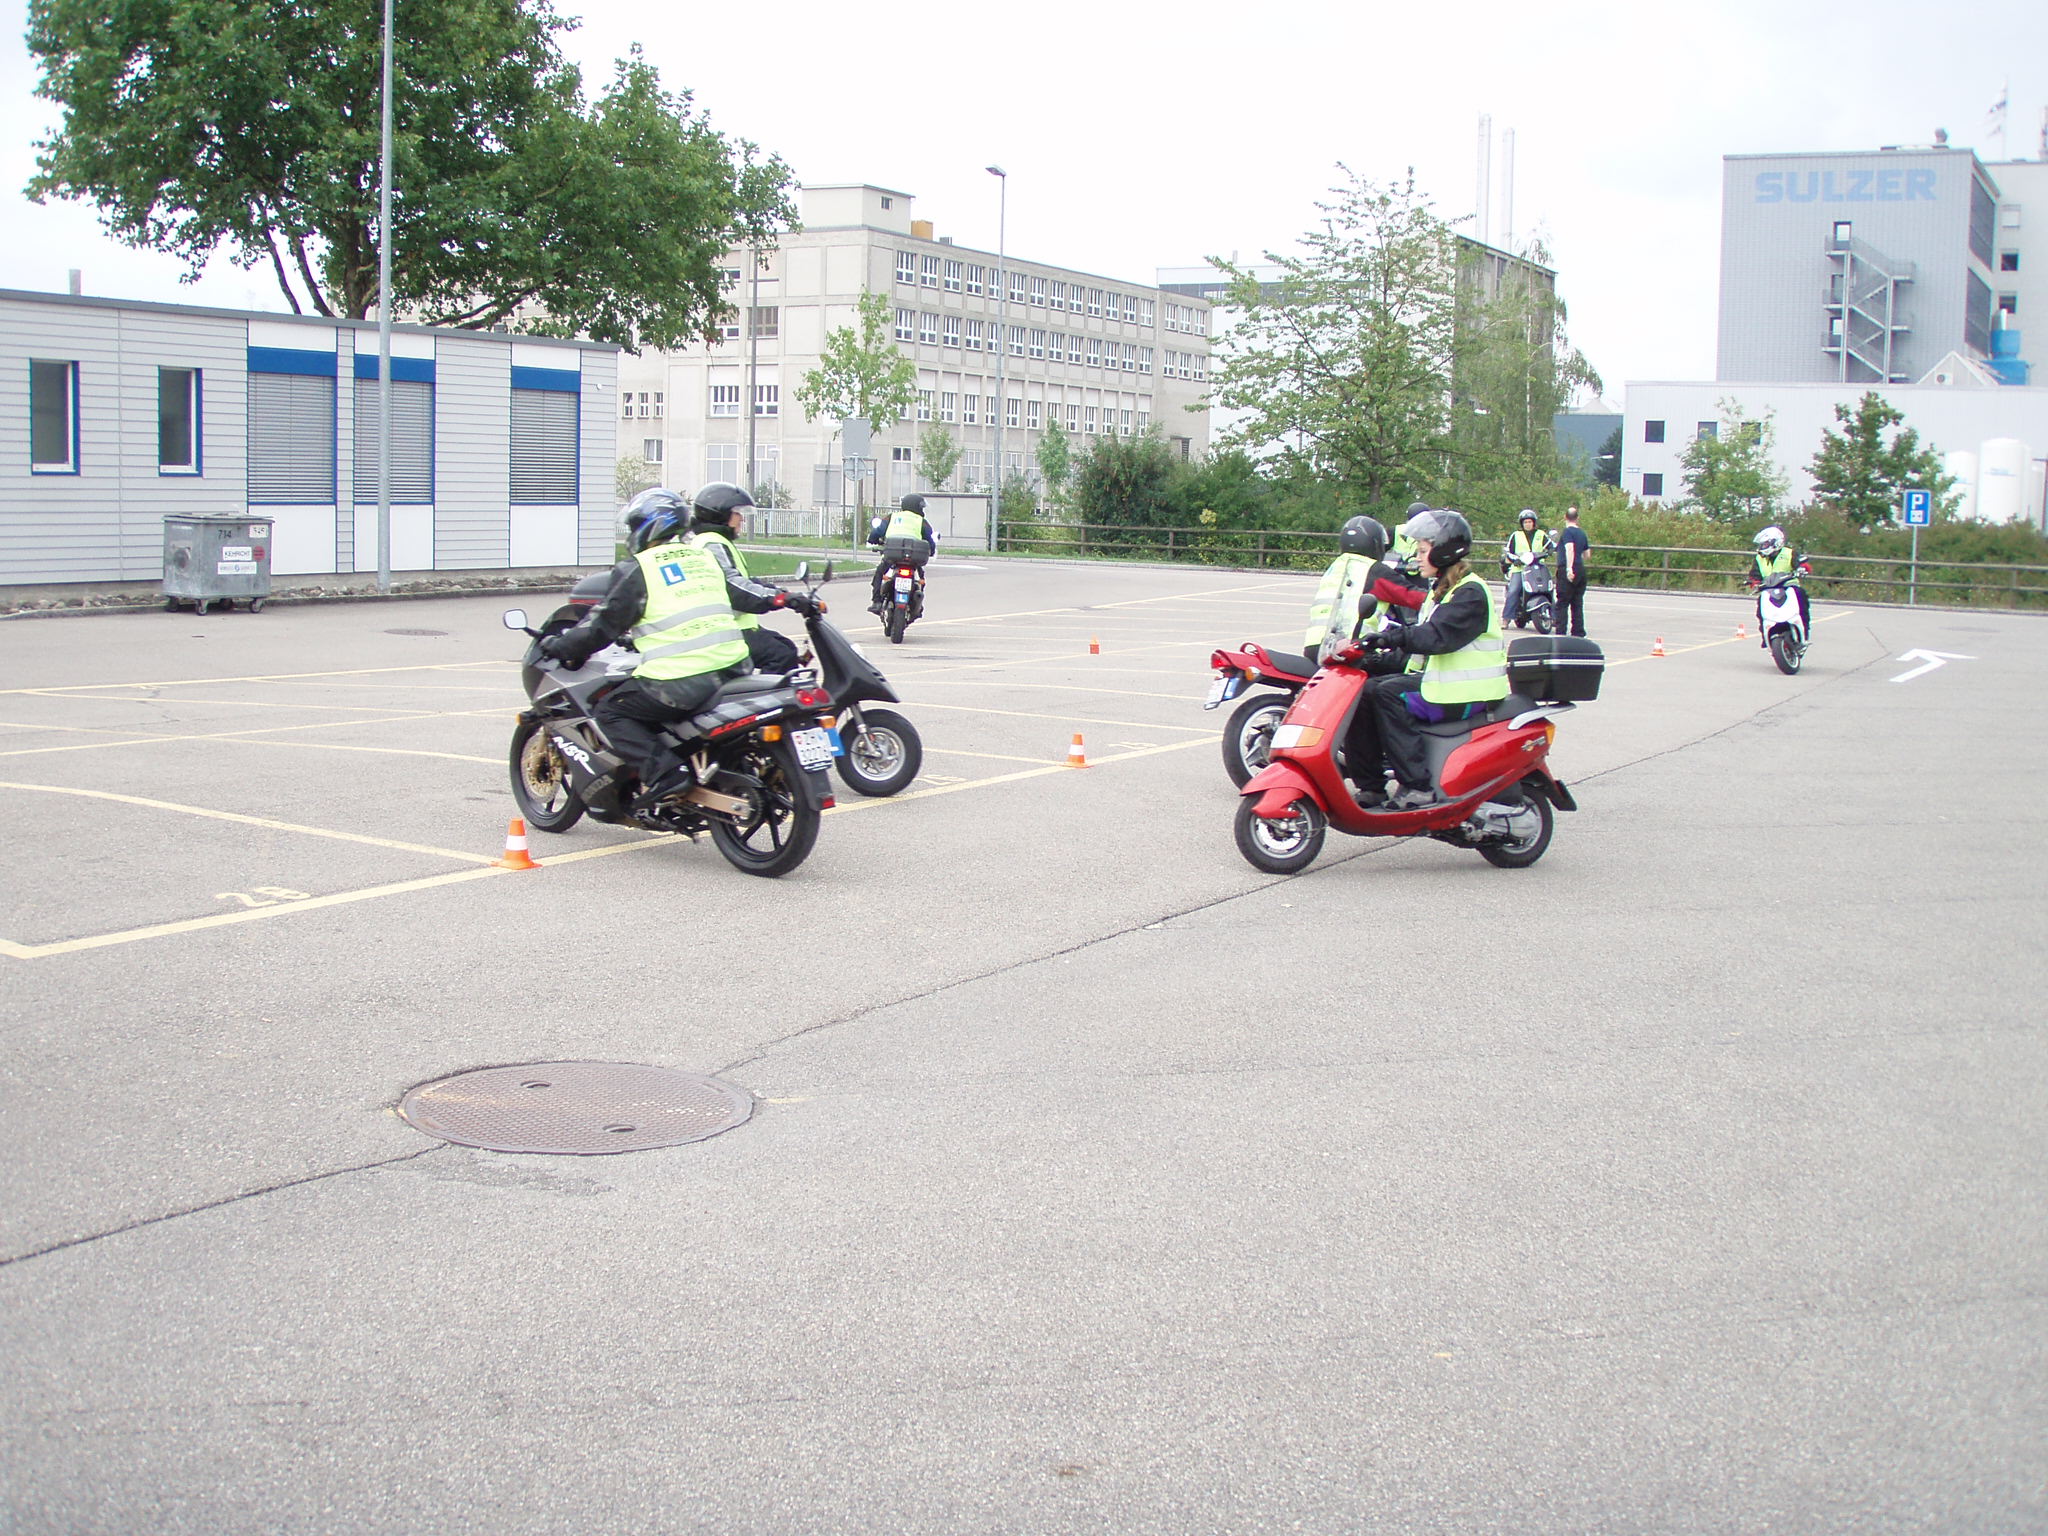 Grundkurse Teil 2 obligatorischer Grundkurse für Rollerfahrschule und Motorradfahrschule Grundkurse in Winterthur durch 